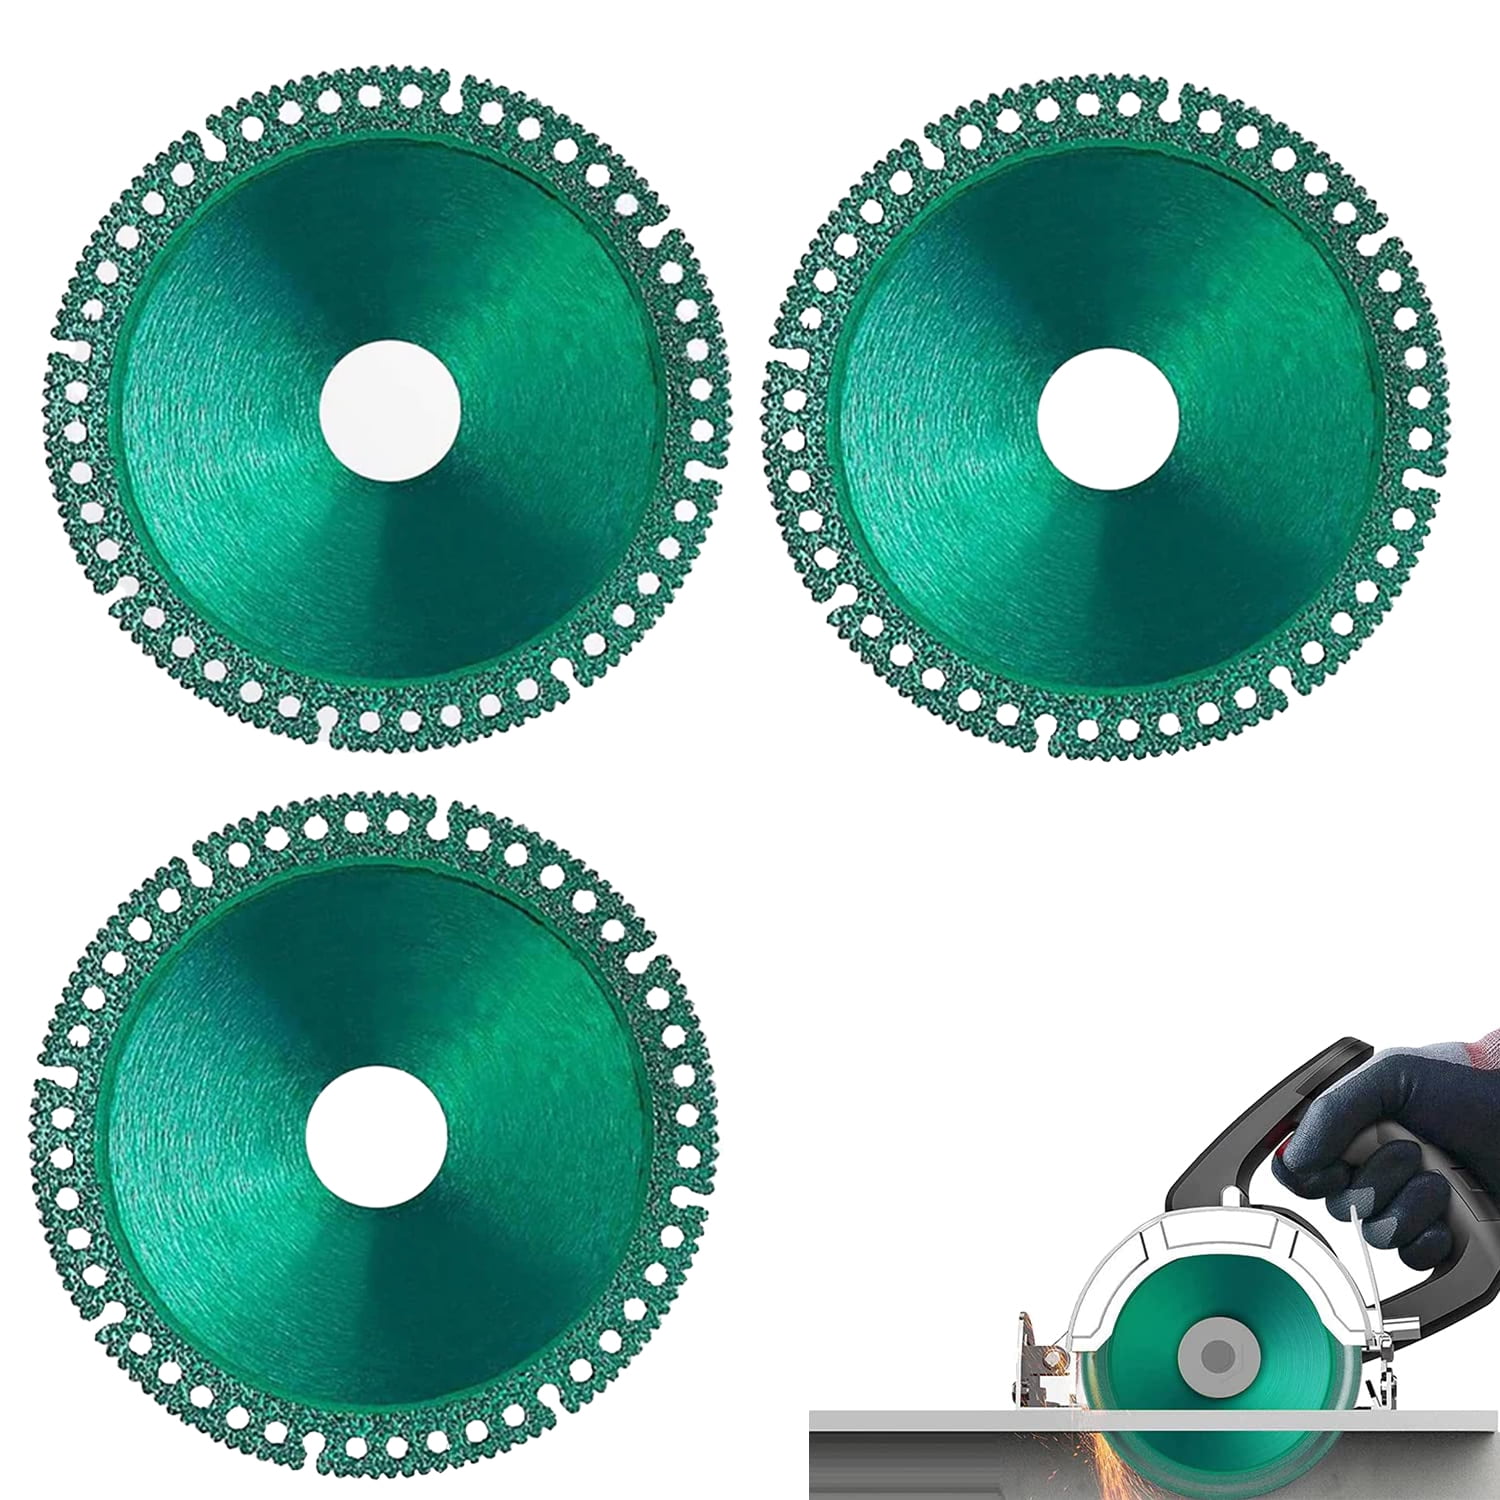 Indestructible Disc for Grinder, Indestructible Cutting Disc, Indestructible  Disc 2.0 - Cut Everything in Seconds, Indestructible Metal Cutting Disc for  Angle Grinder (3) - Yahoo Shopping